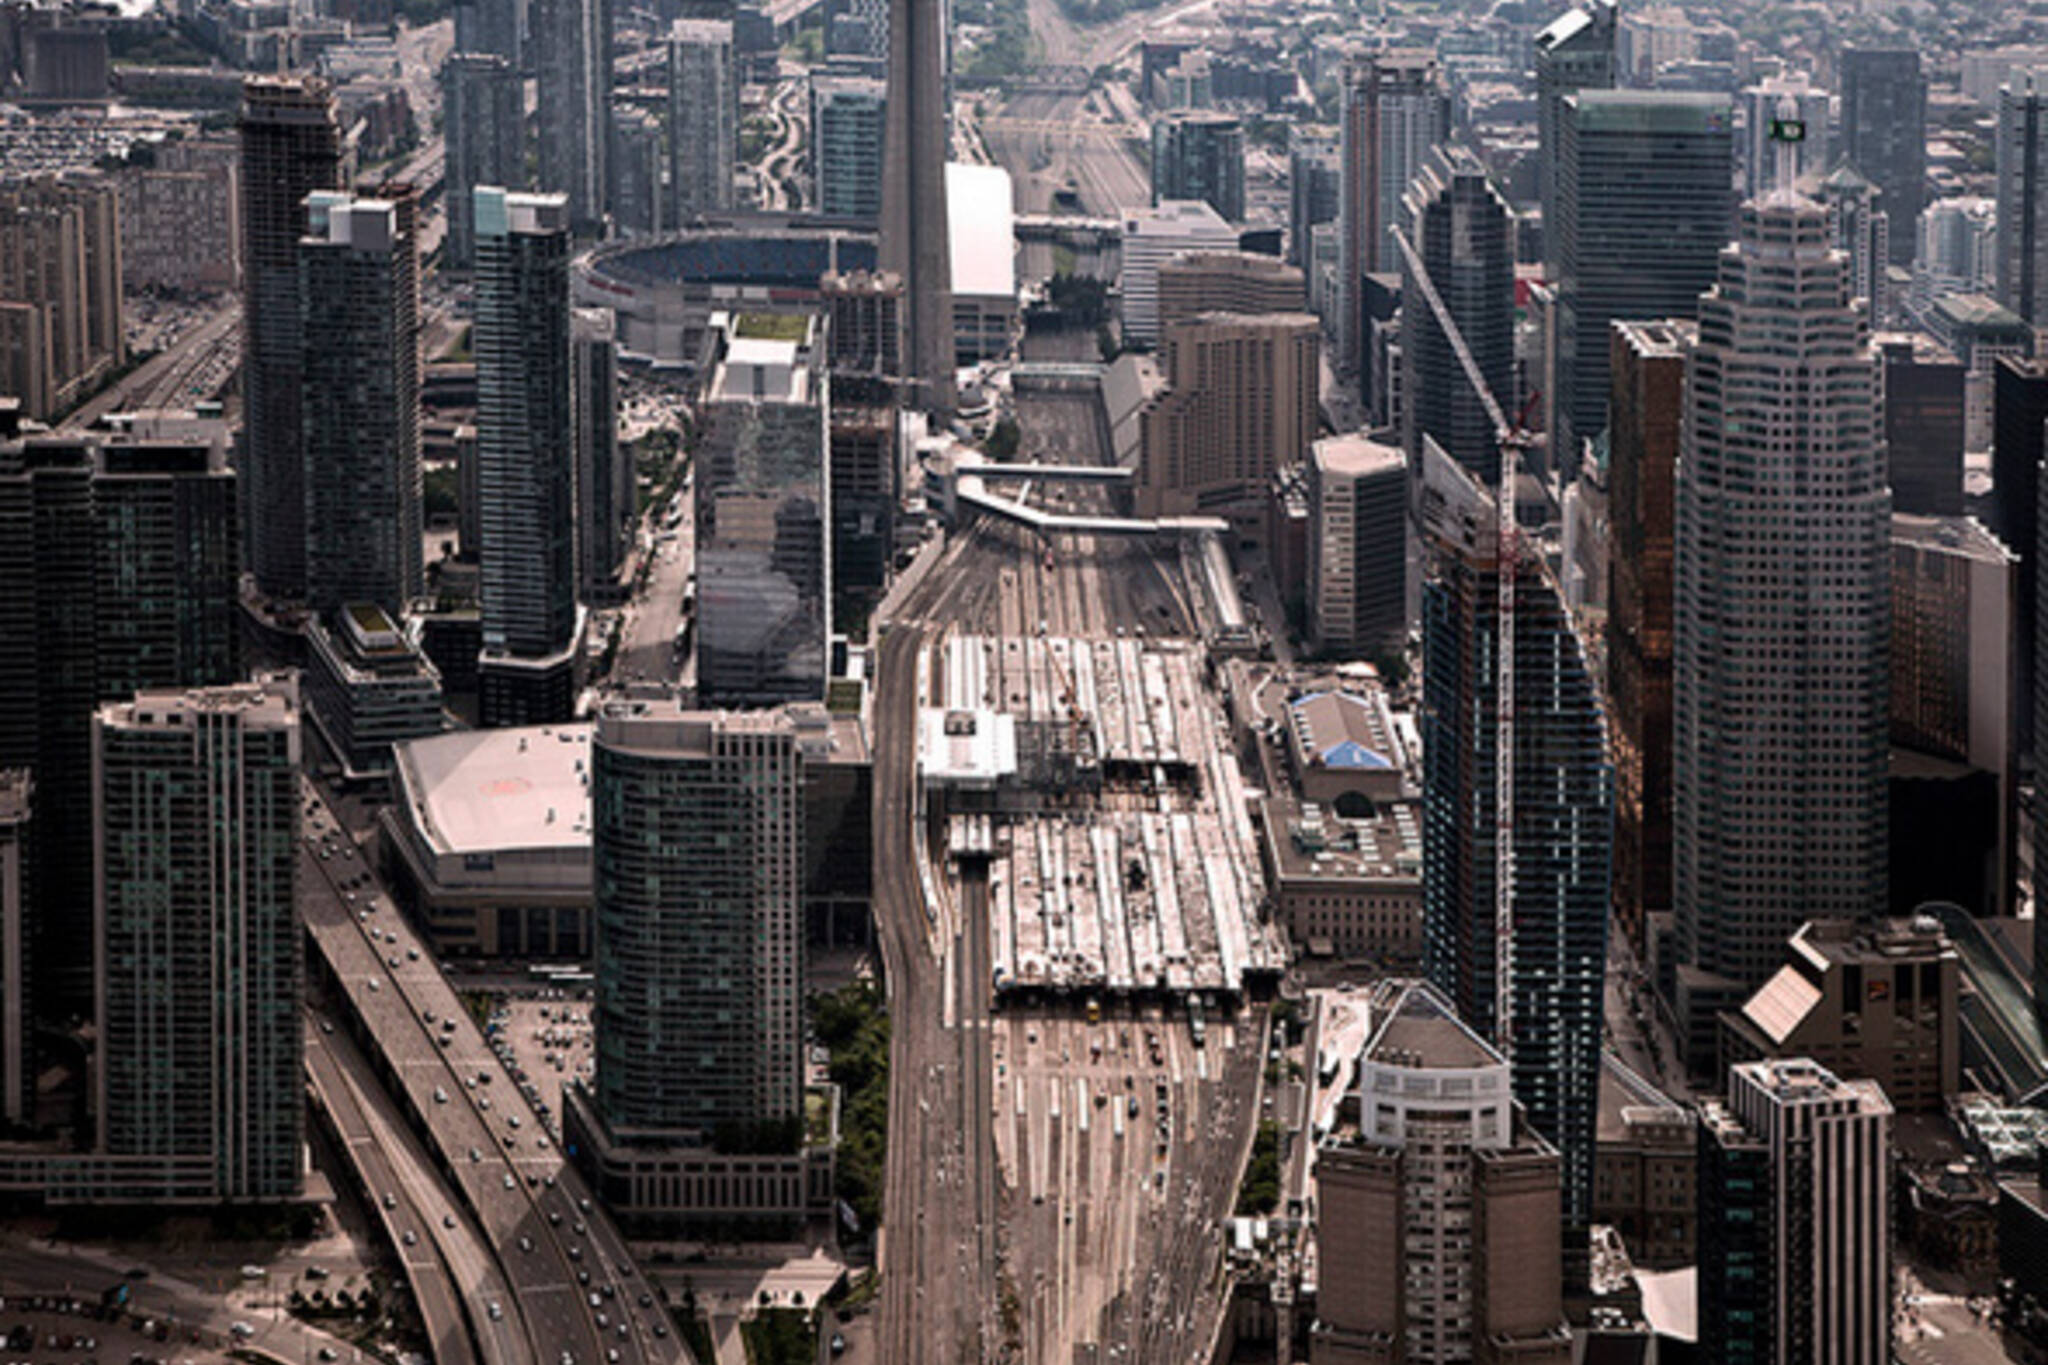 Toronto aerial